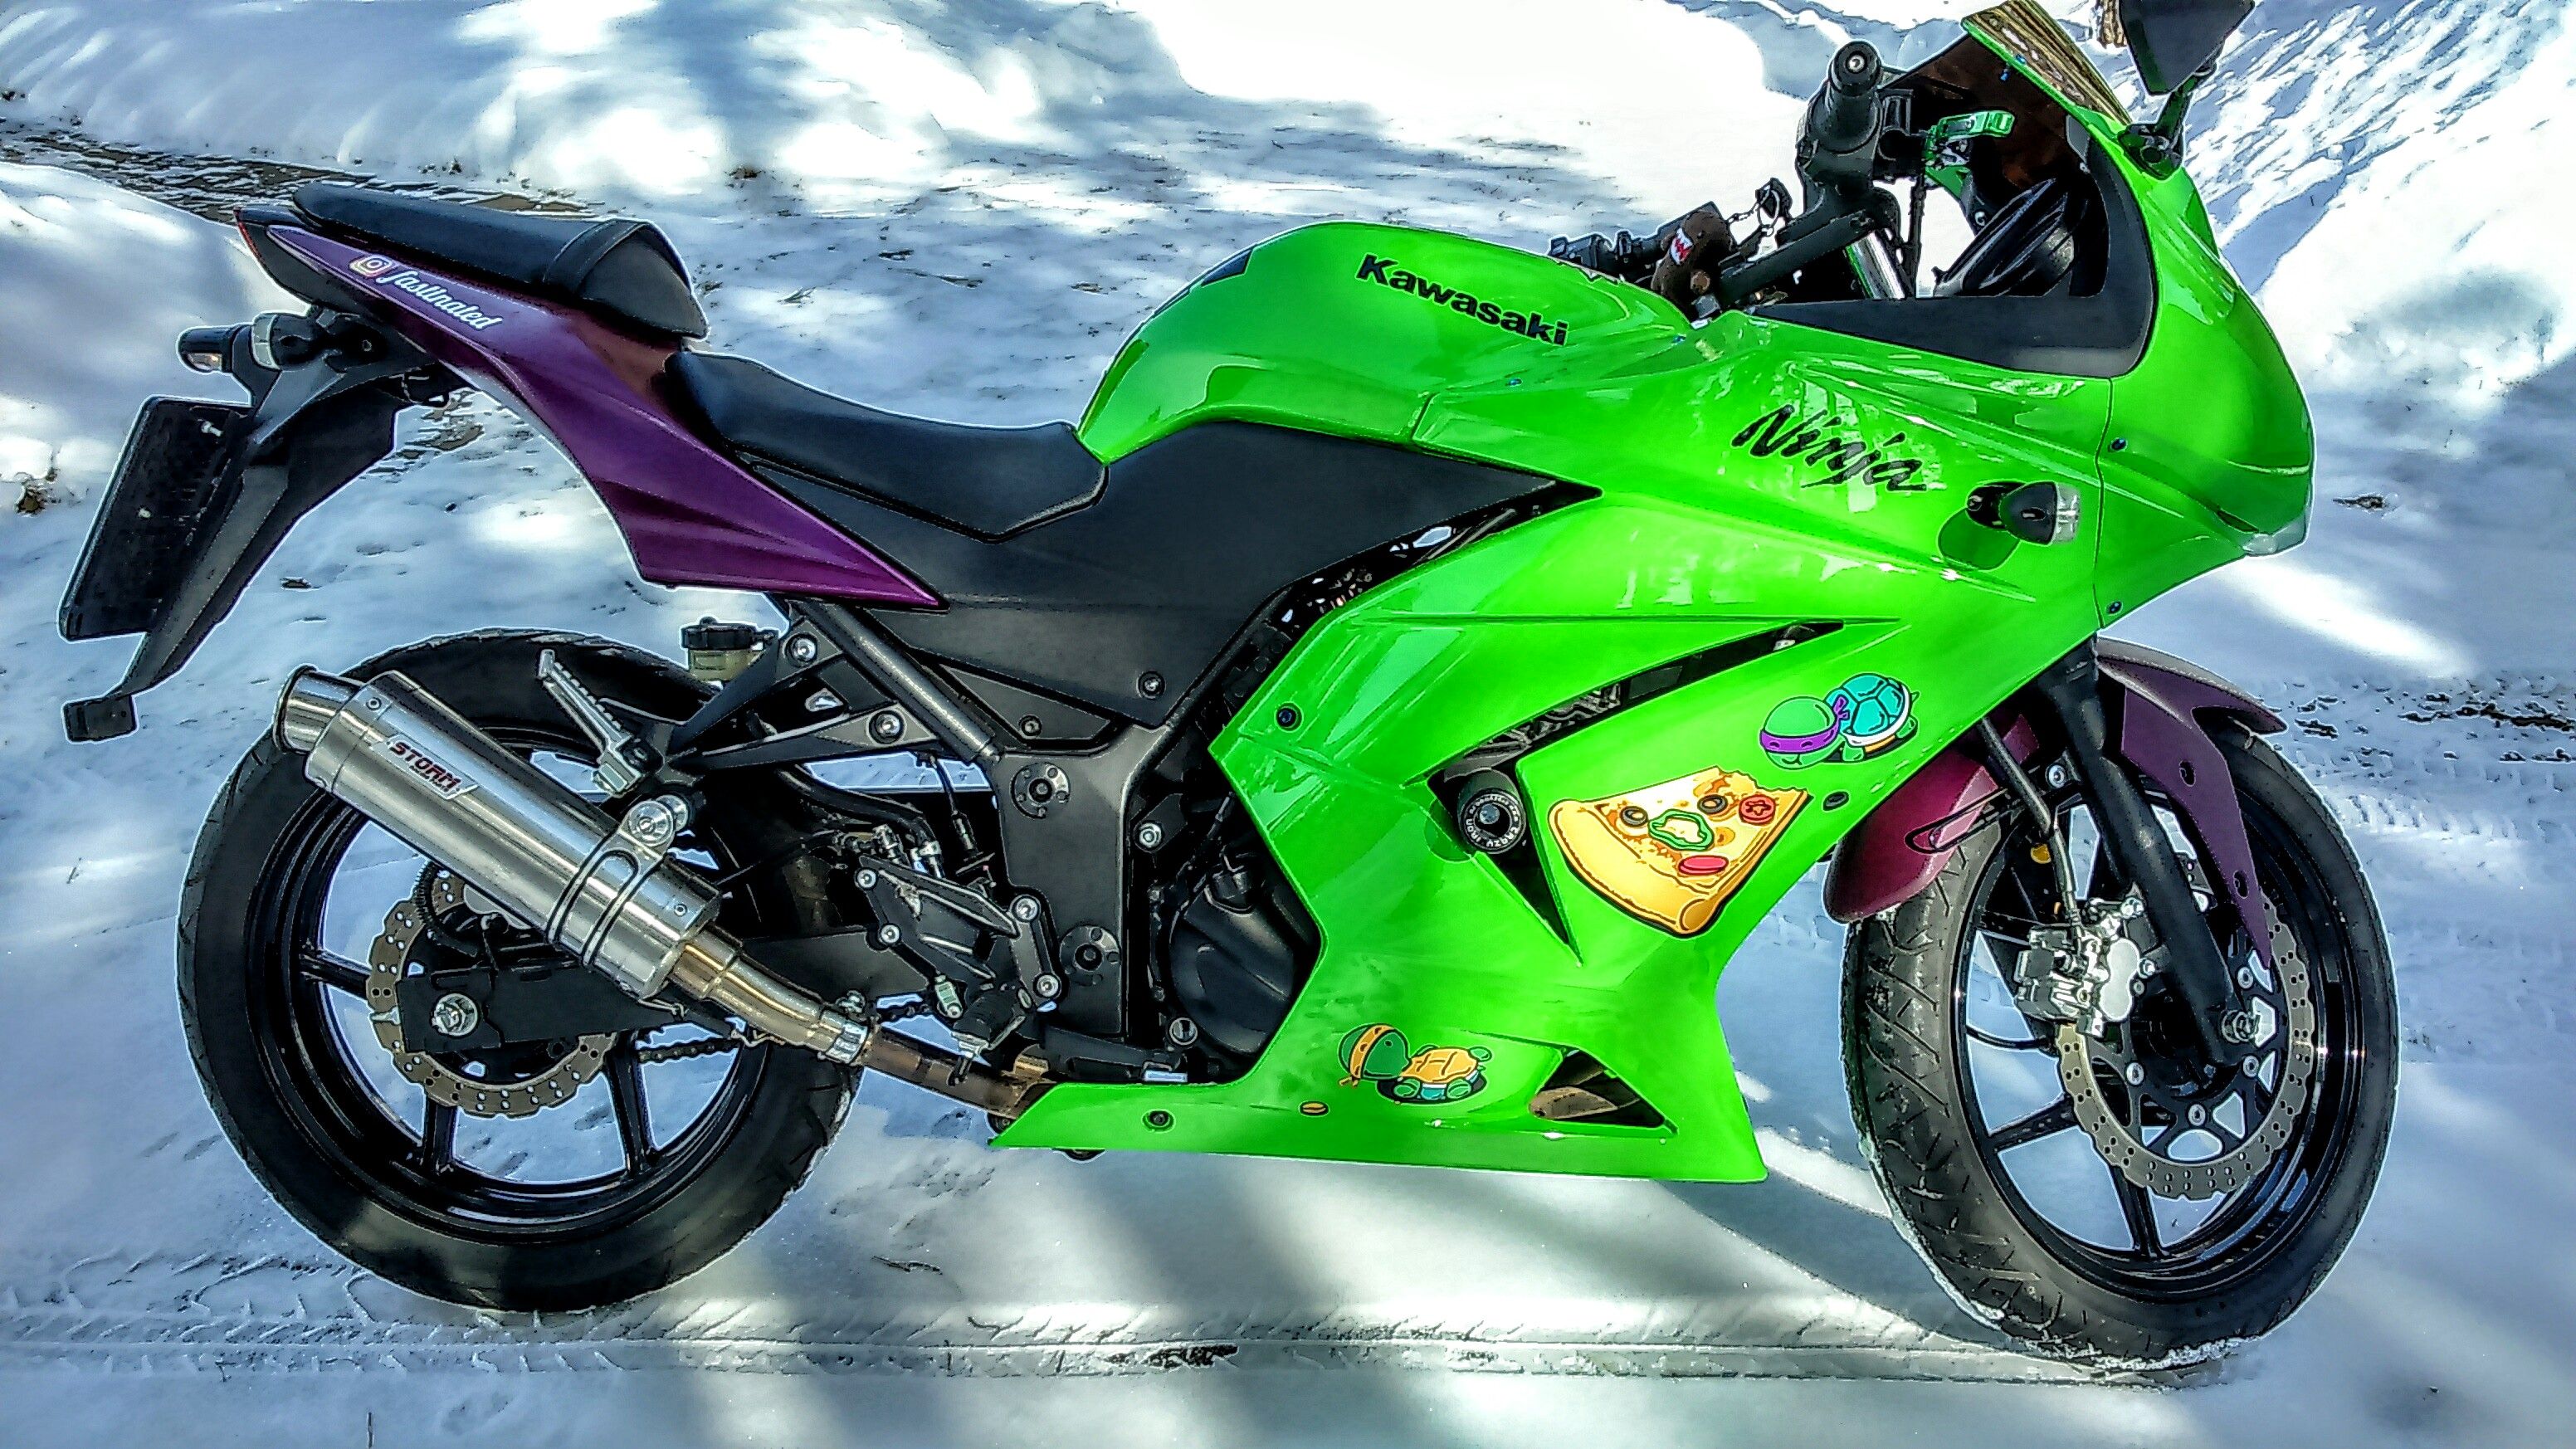 Мотоцикл Kawasaki Ninja (Кавасаки Ниндзя) 250R — интересный мотоцикл для начинающих